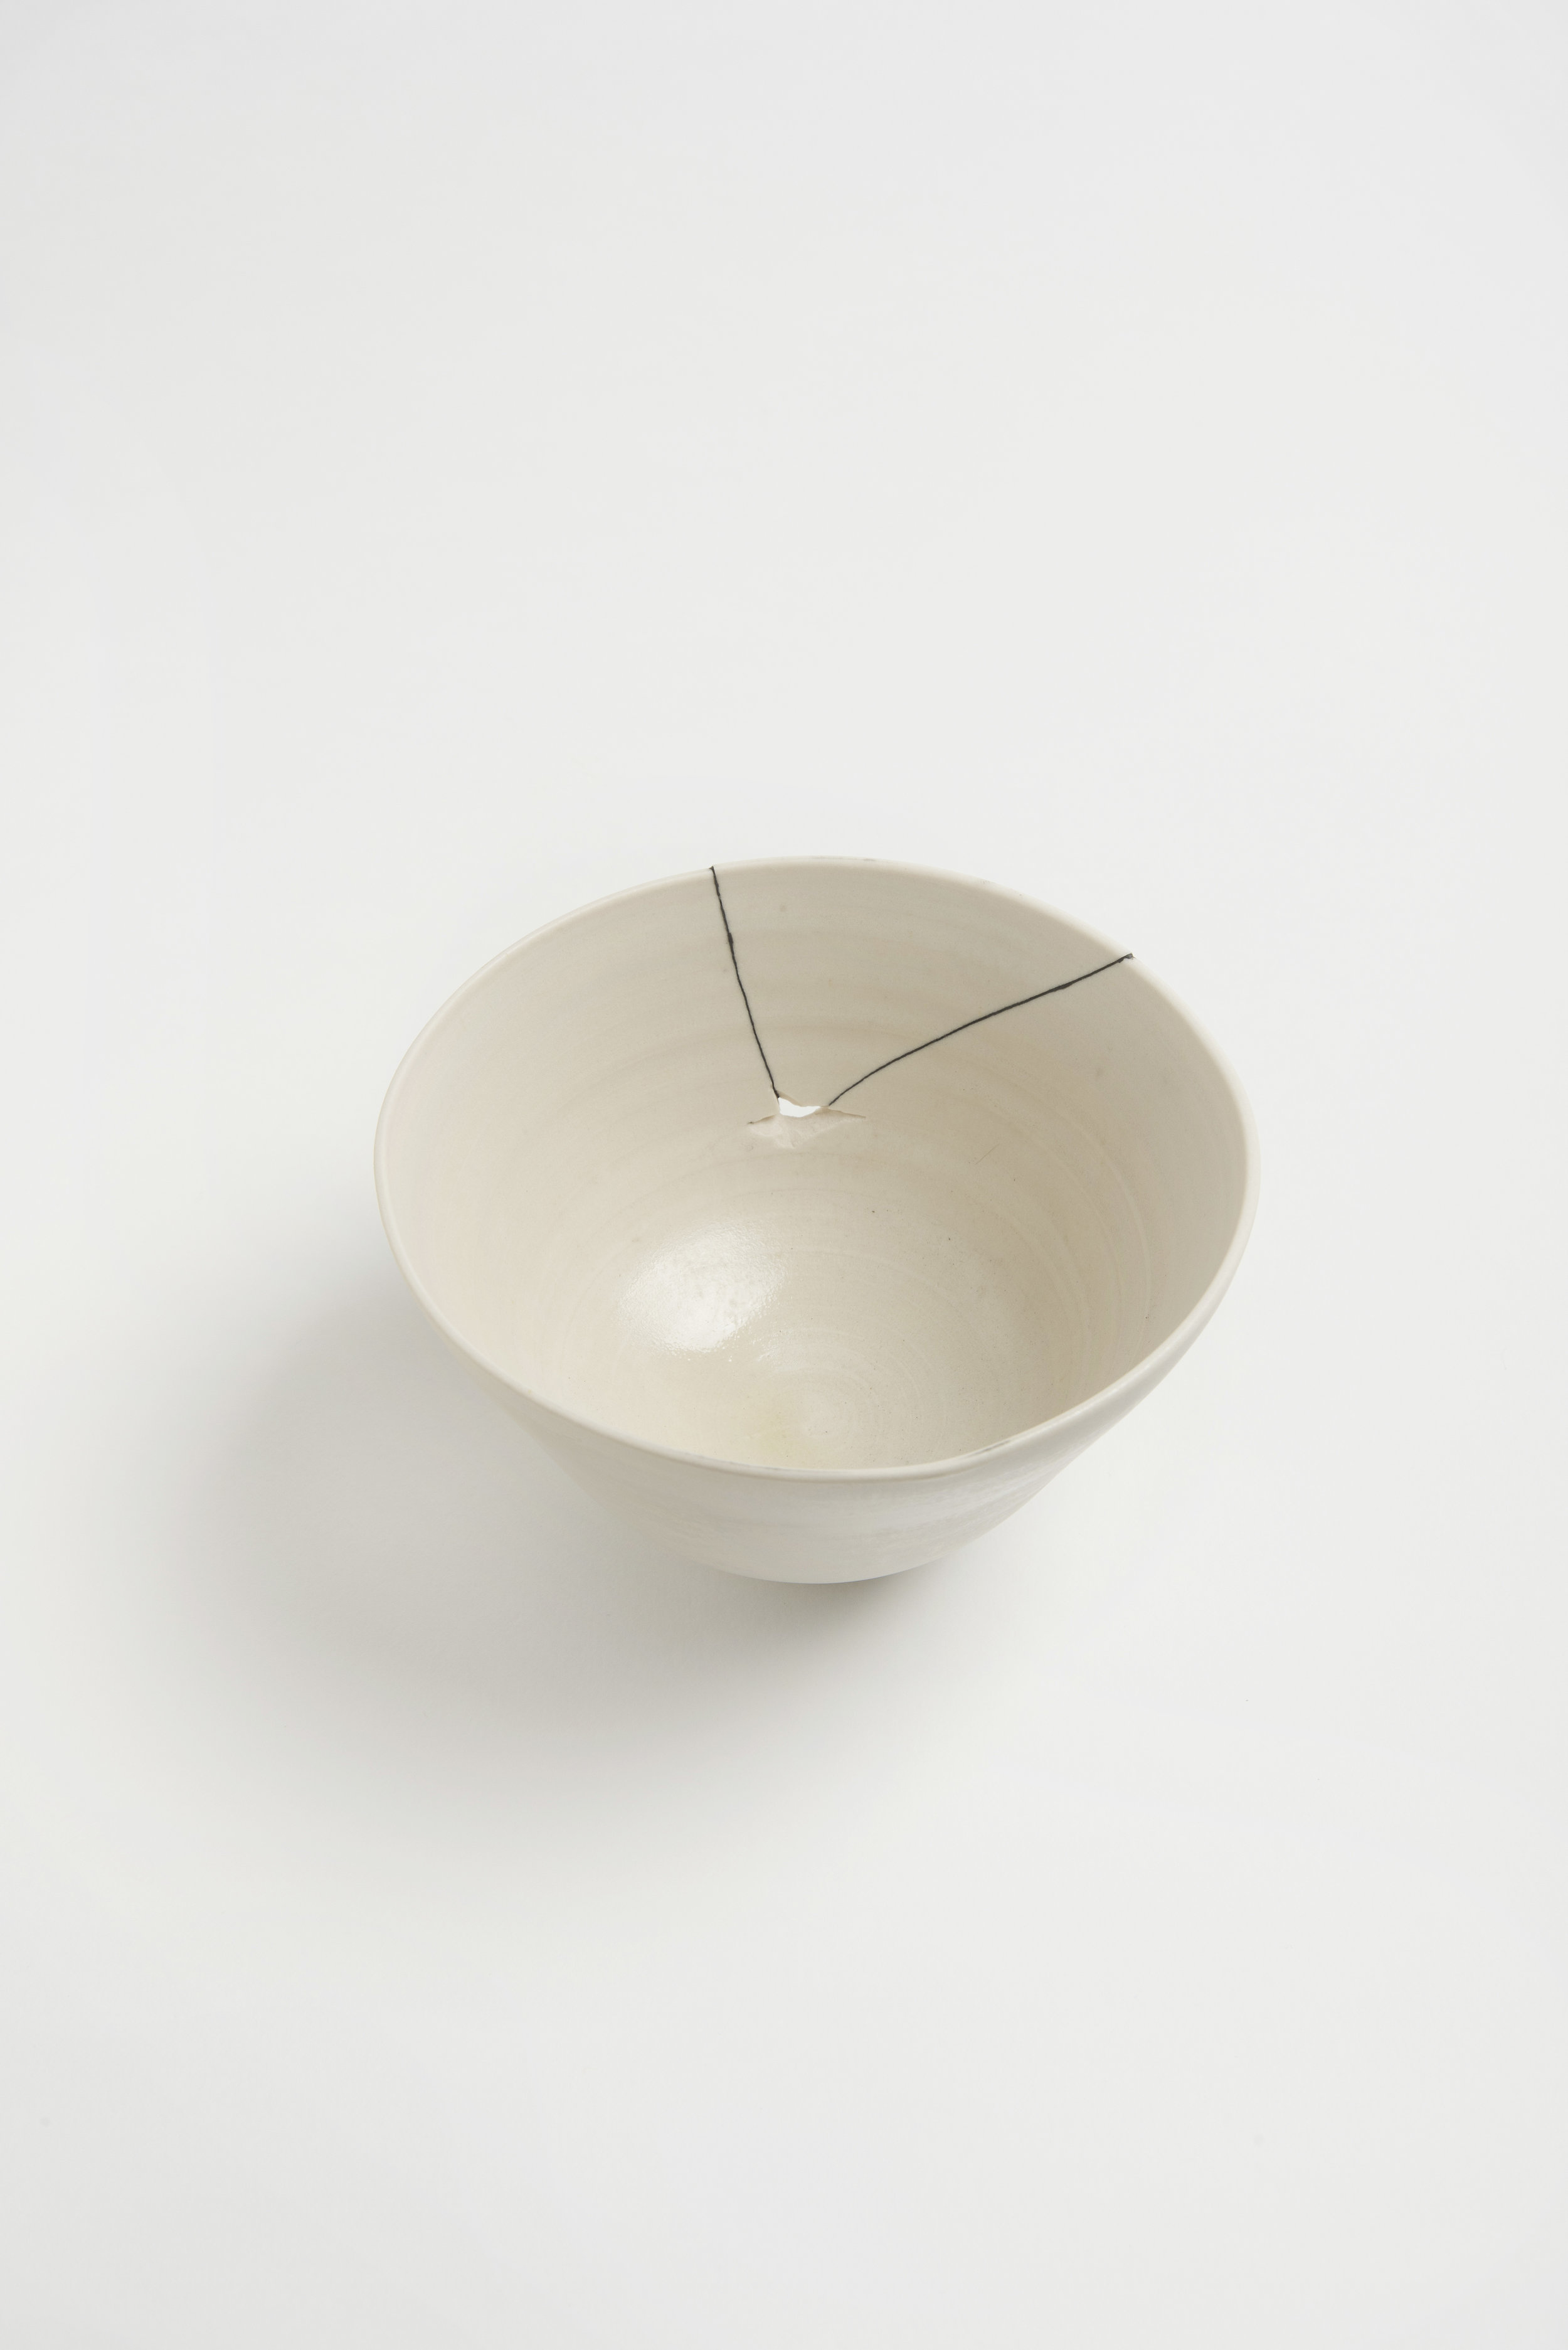 white-fracture-series-bowl-romy-northover-ceramics-the-garnered-32.jpg